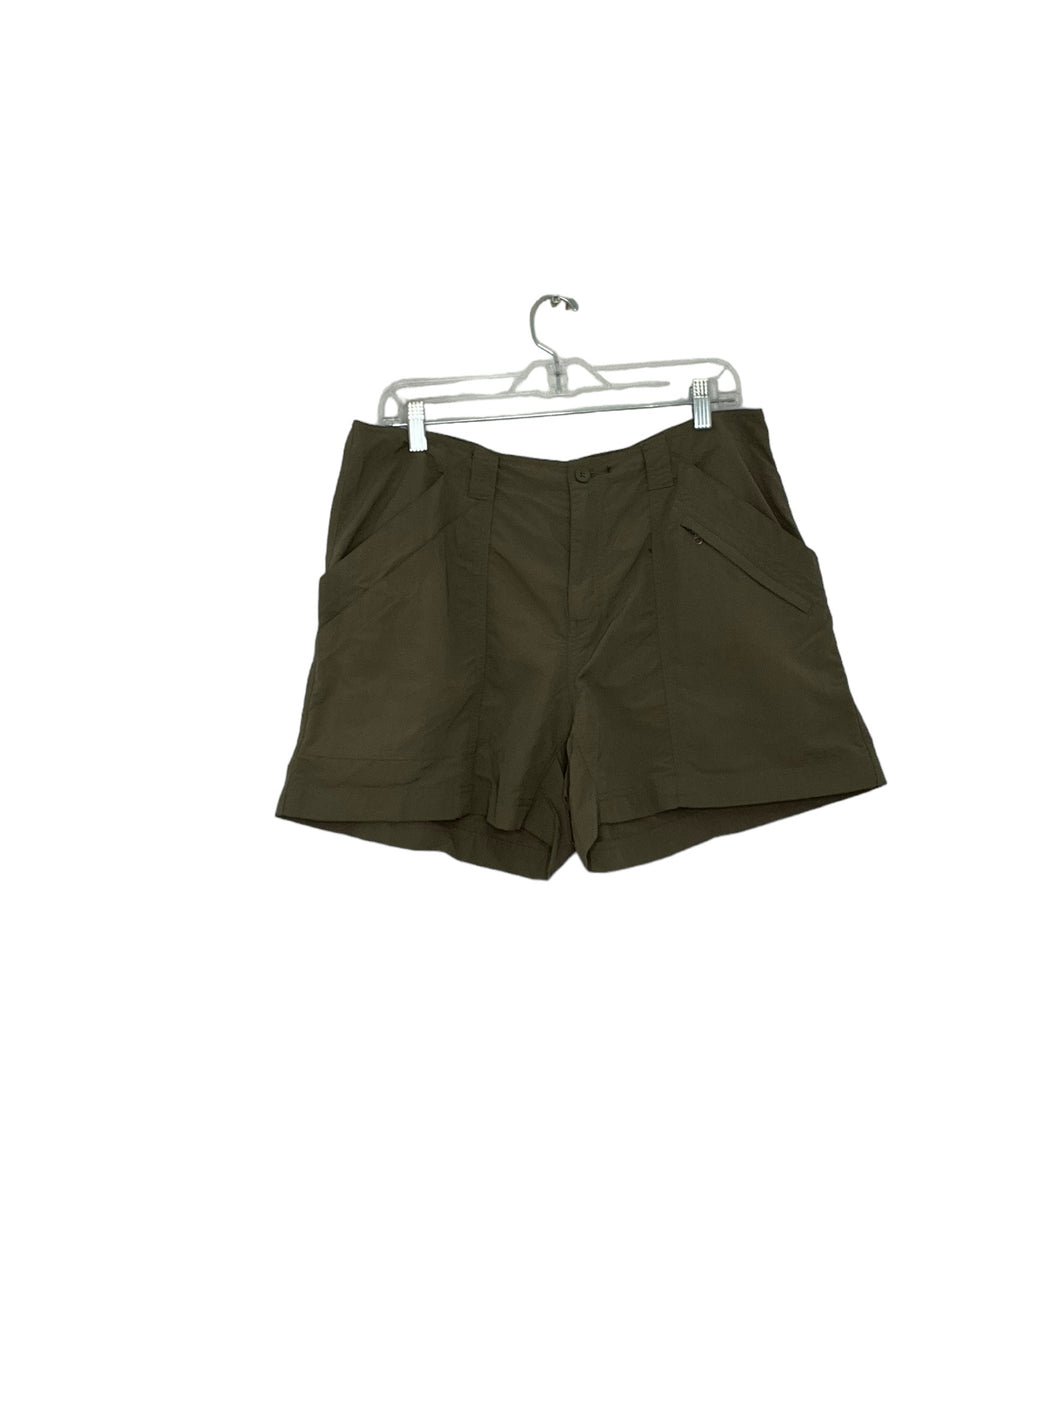 Royal Robbins Size 14 Army Green Shorts- Ladies